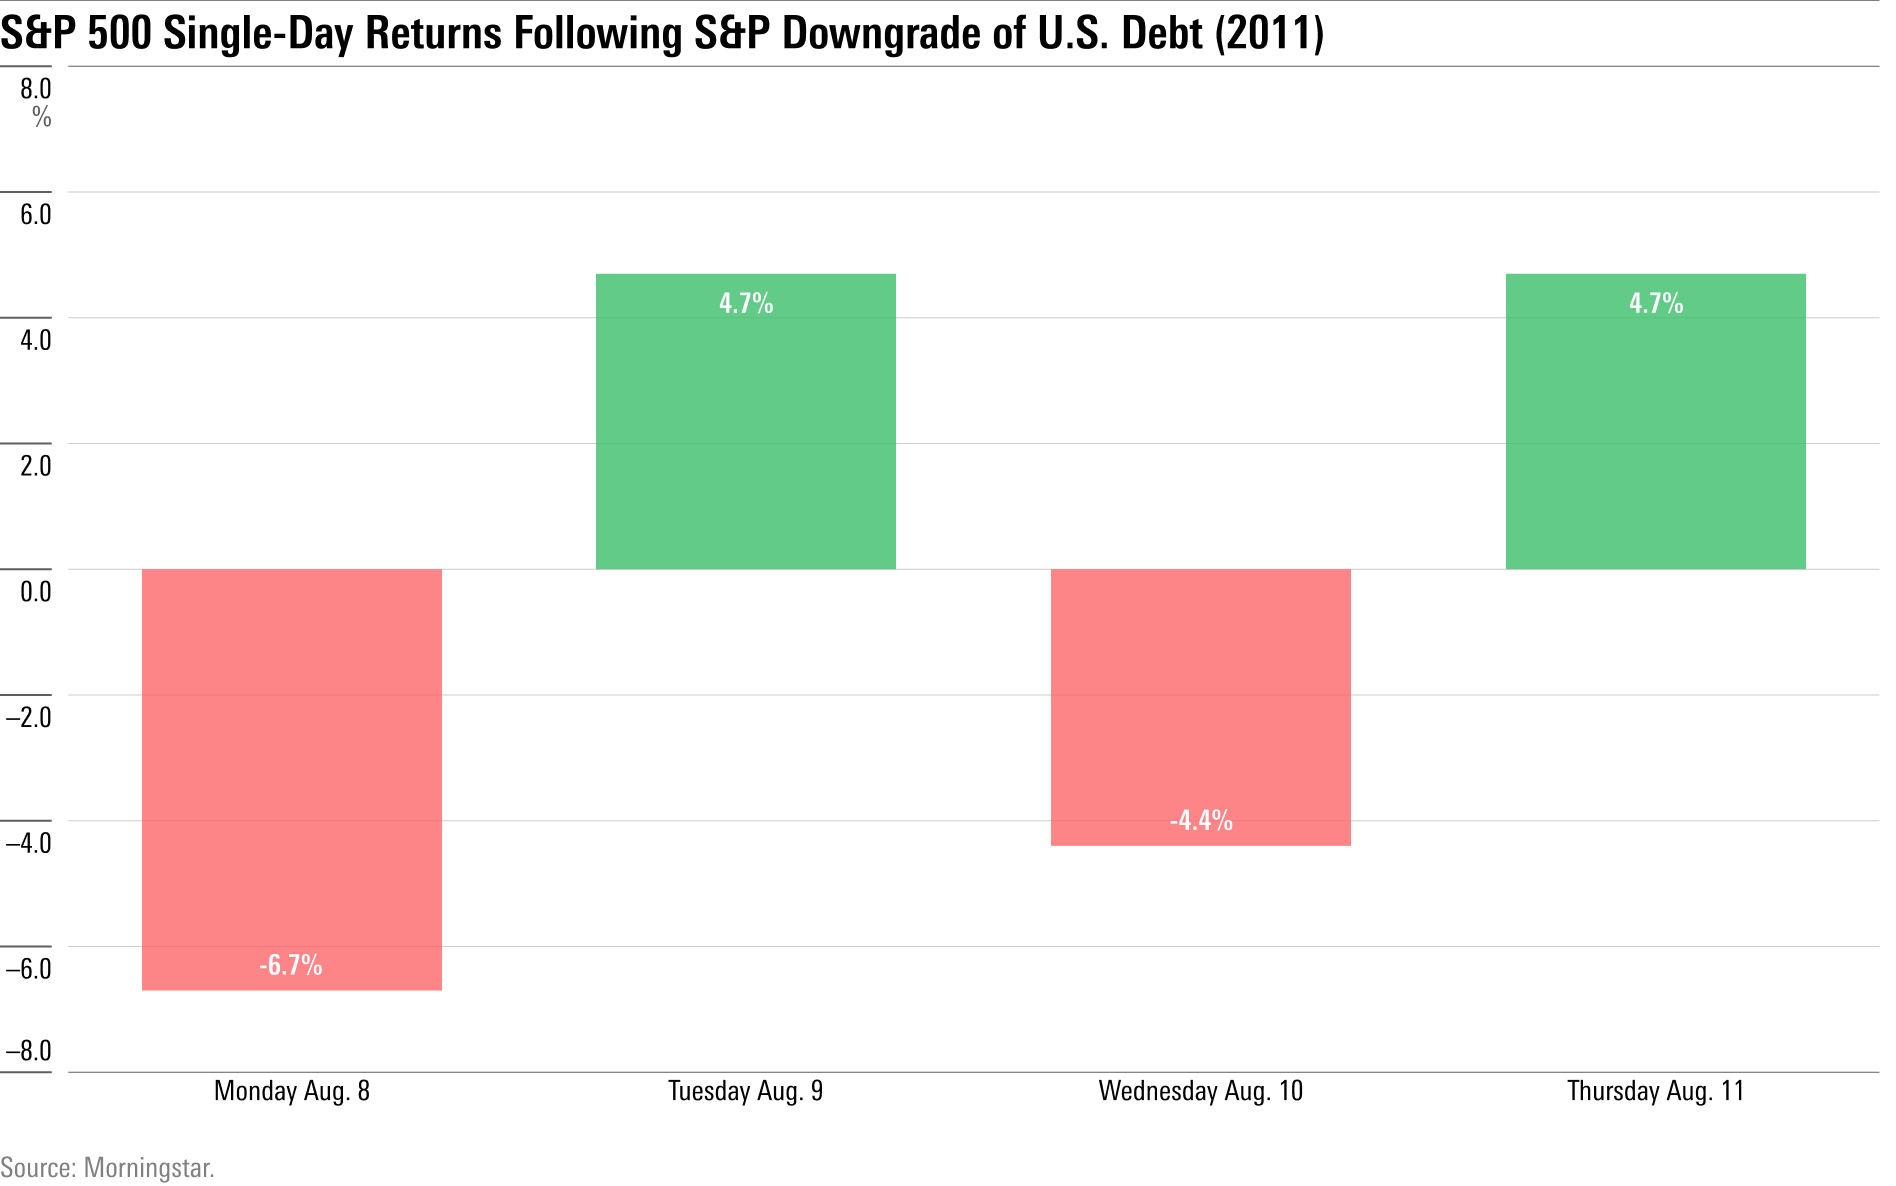 rentabilidades diarios del S&P 500 durante la semana posterior a la rebaja de la calificación crediticia de Estados Unidos